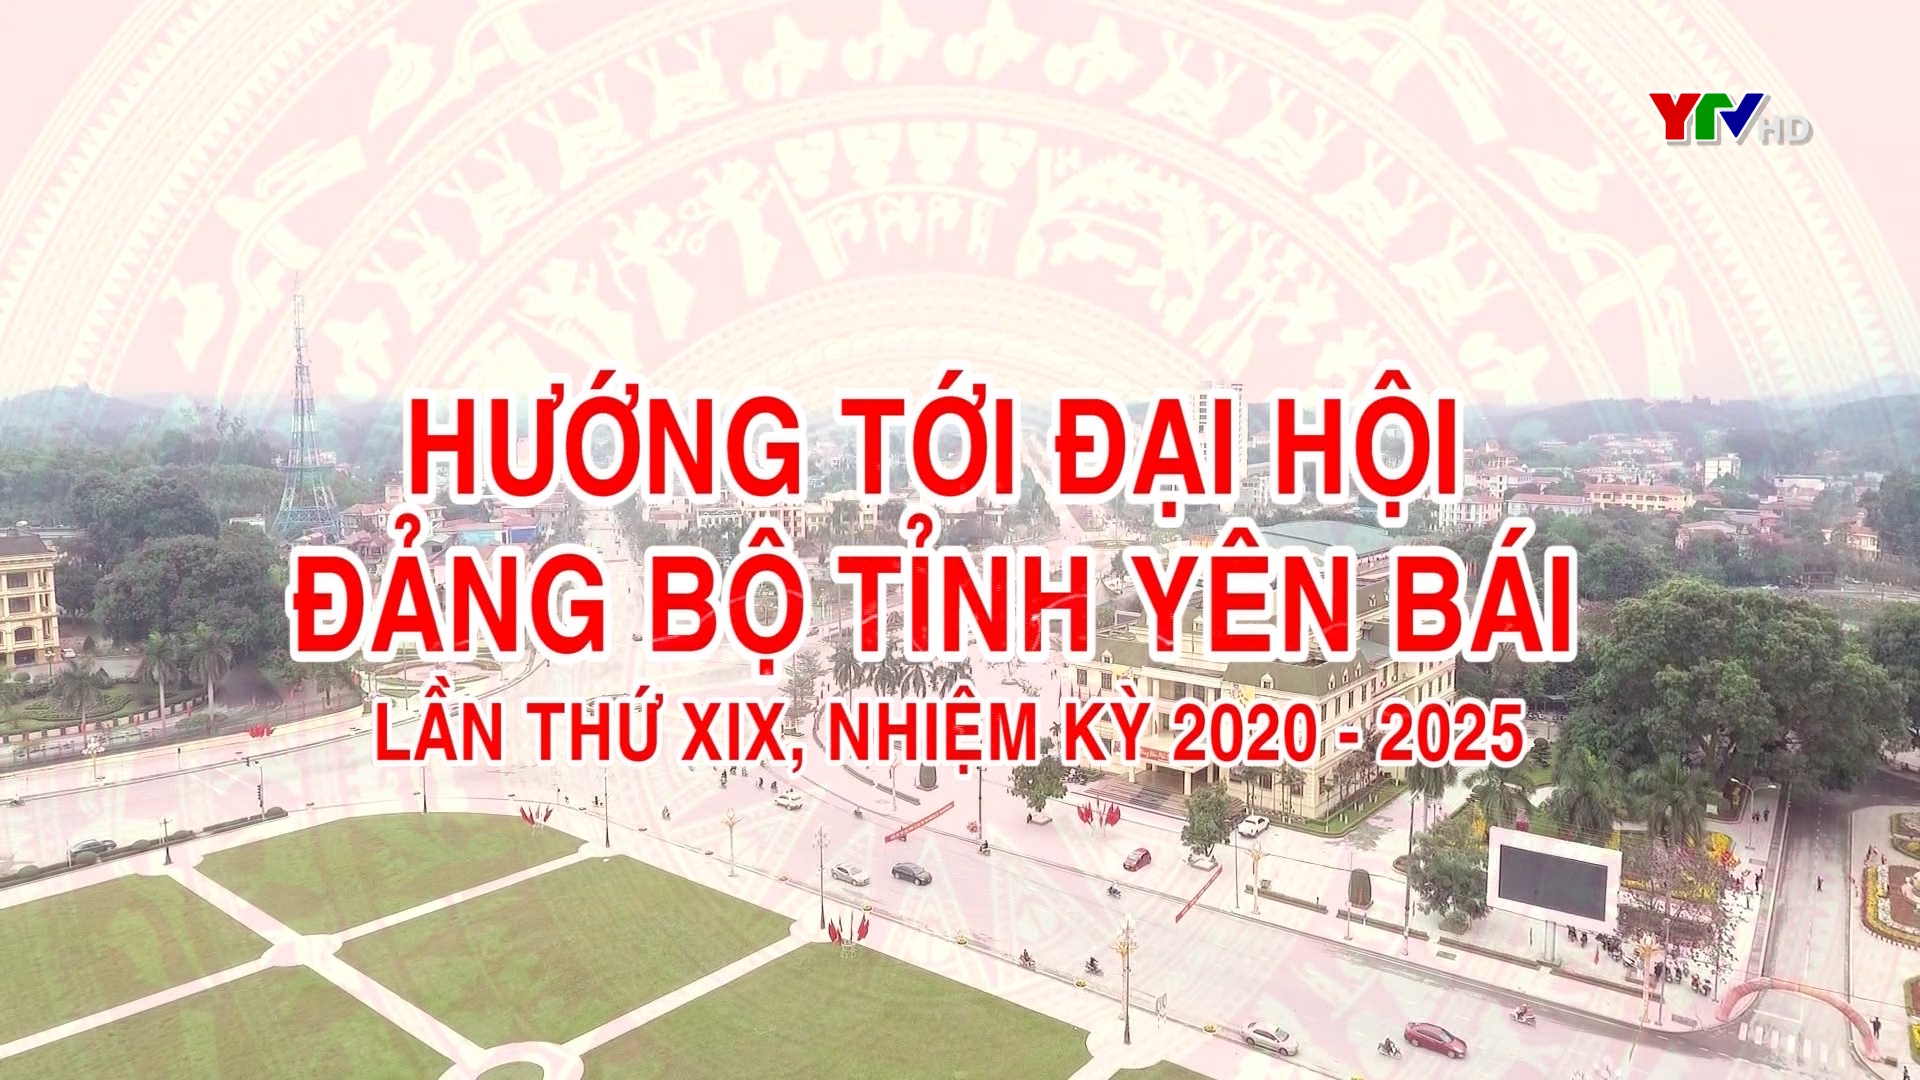 Người dân huyện vùng cao Mù Cang Chải hướng về Đại hội Đảng bộ tỉnh Yên Bái lần thứ XIX